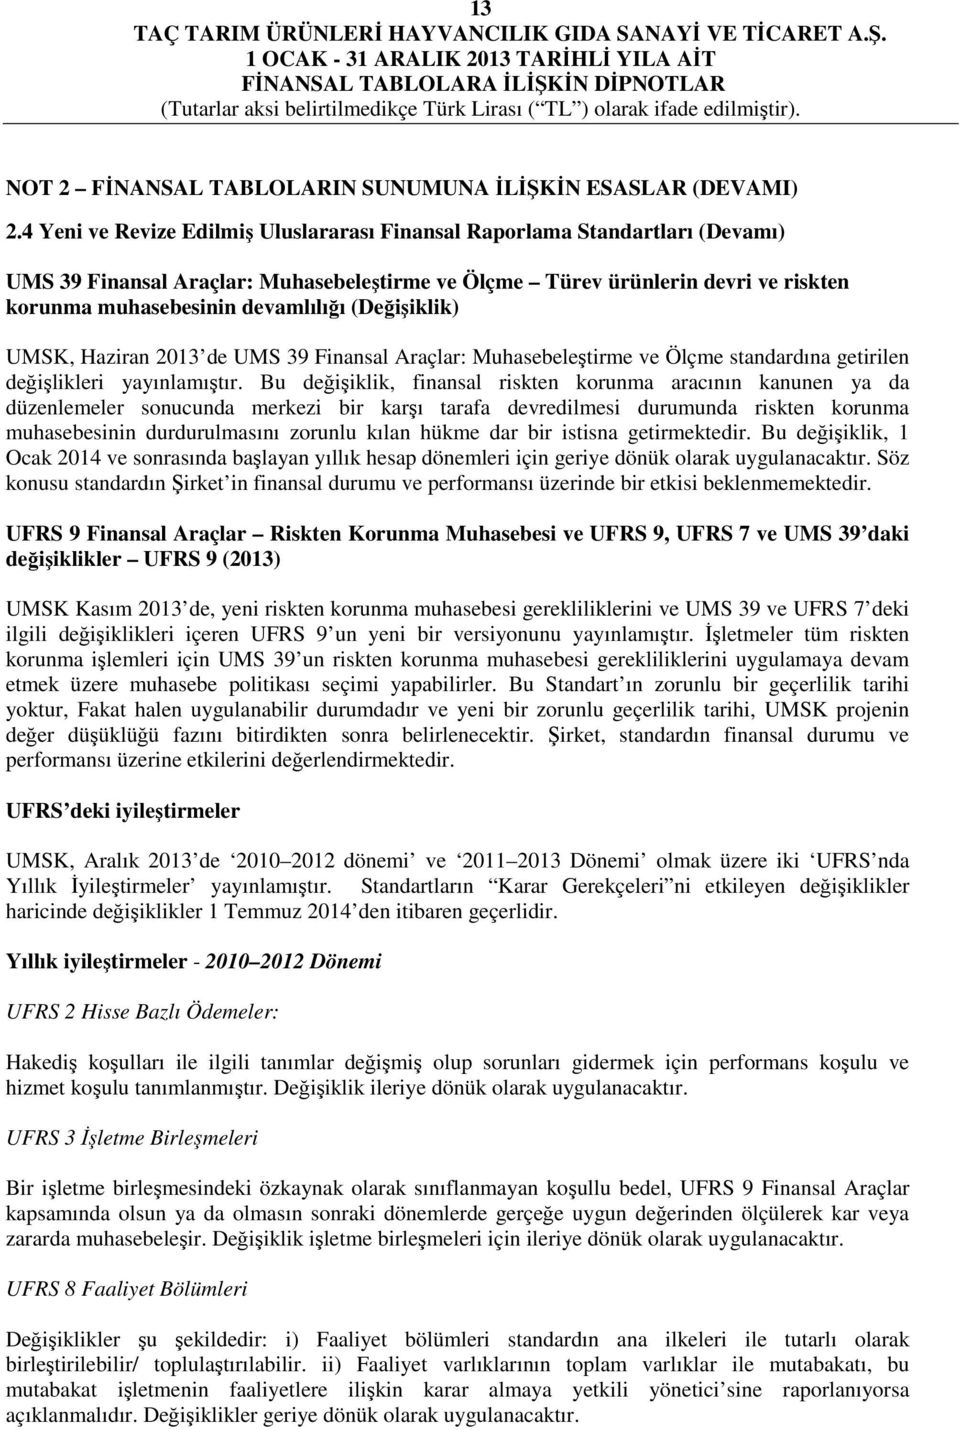 (Değişiklik) UMSK, Haziran 2013 de UMS 39 Finansal Araçlar: Muhasebeleştirme ve Ölçme standardına getirilen değişlikleri yayınlamıştır.